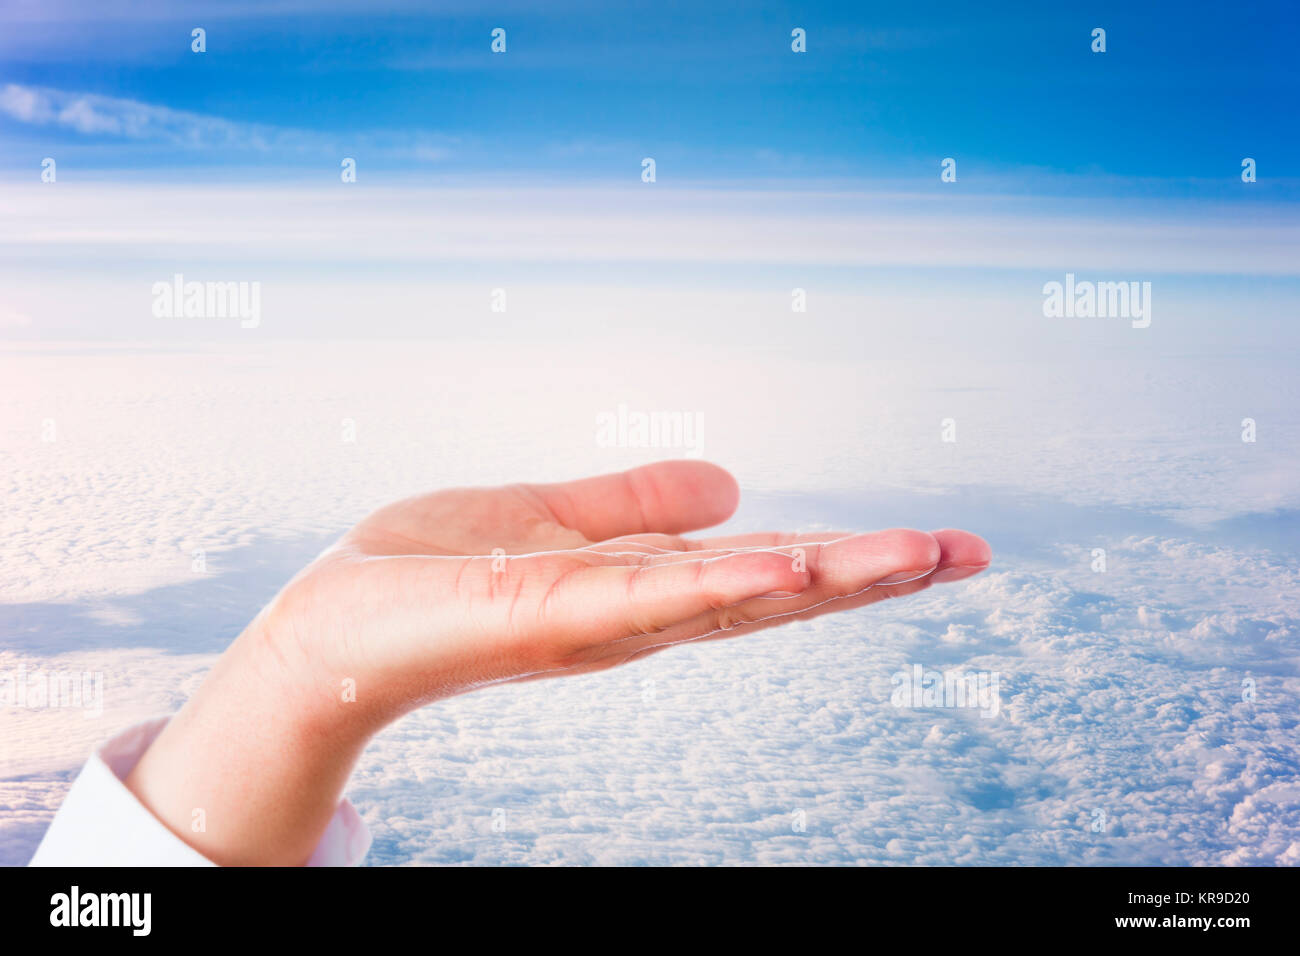 Abrir la palma de la mano por encima de las nubes Foto de stock